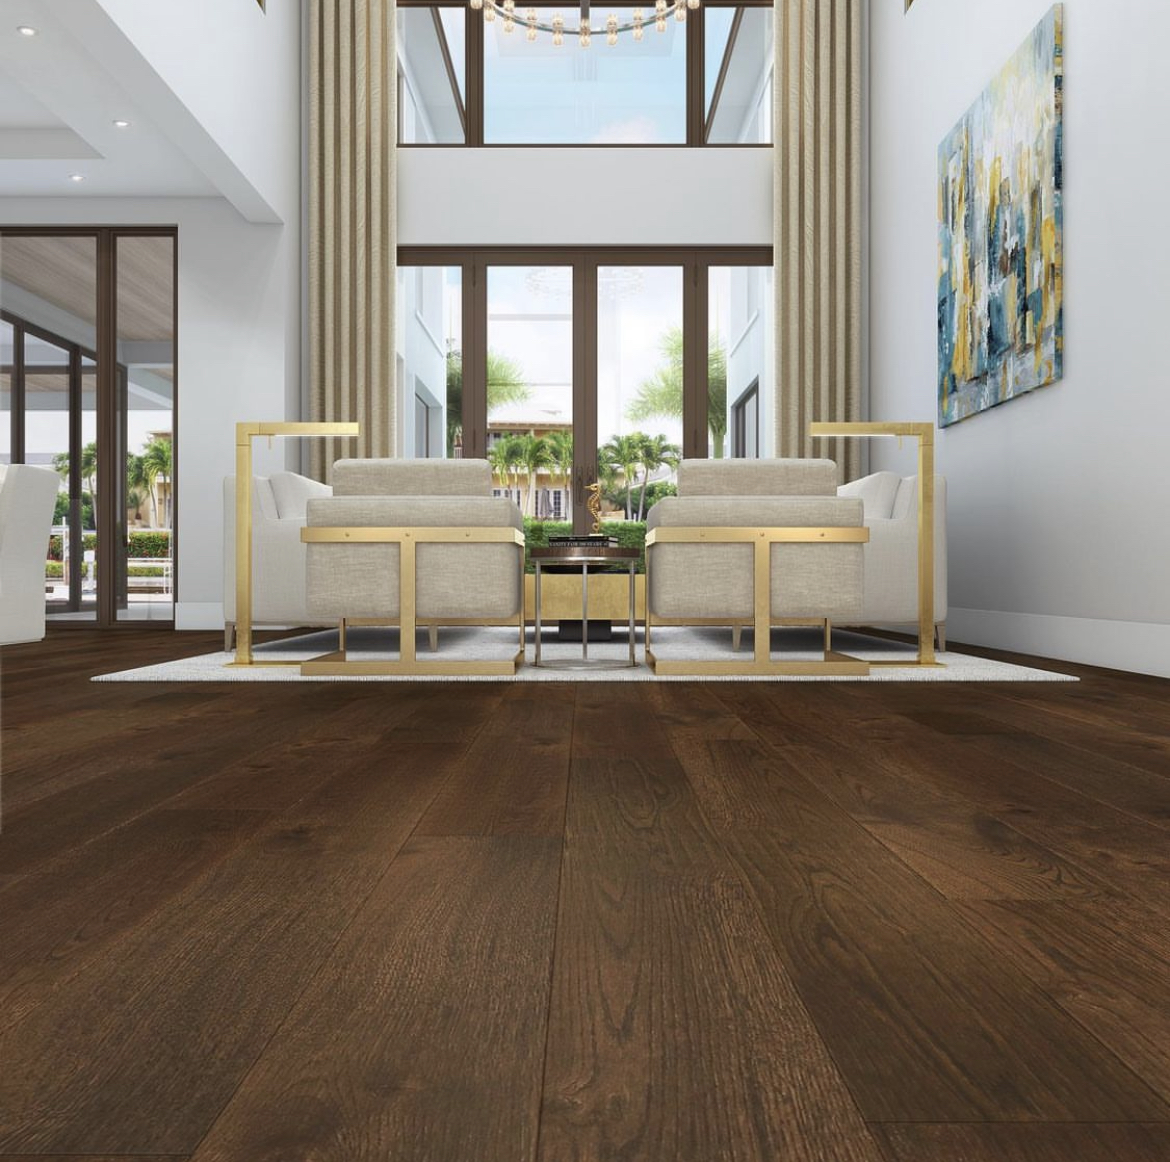 Brunello brown hardwood floor